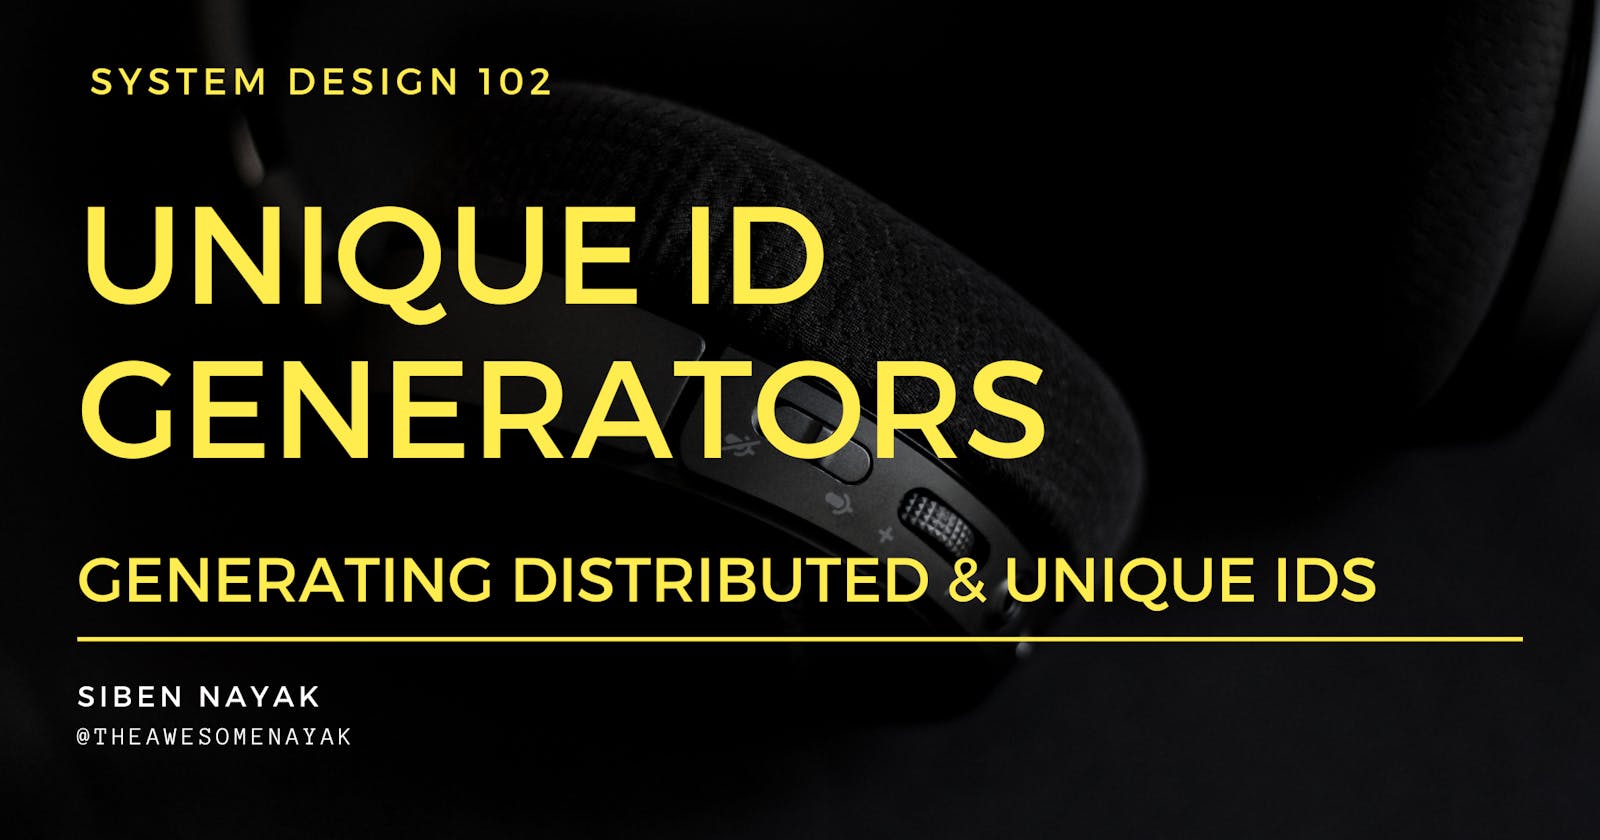 System Design 102 - Unique ID Generators